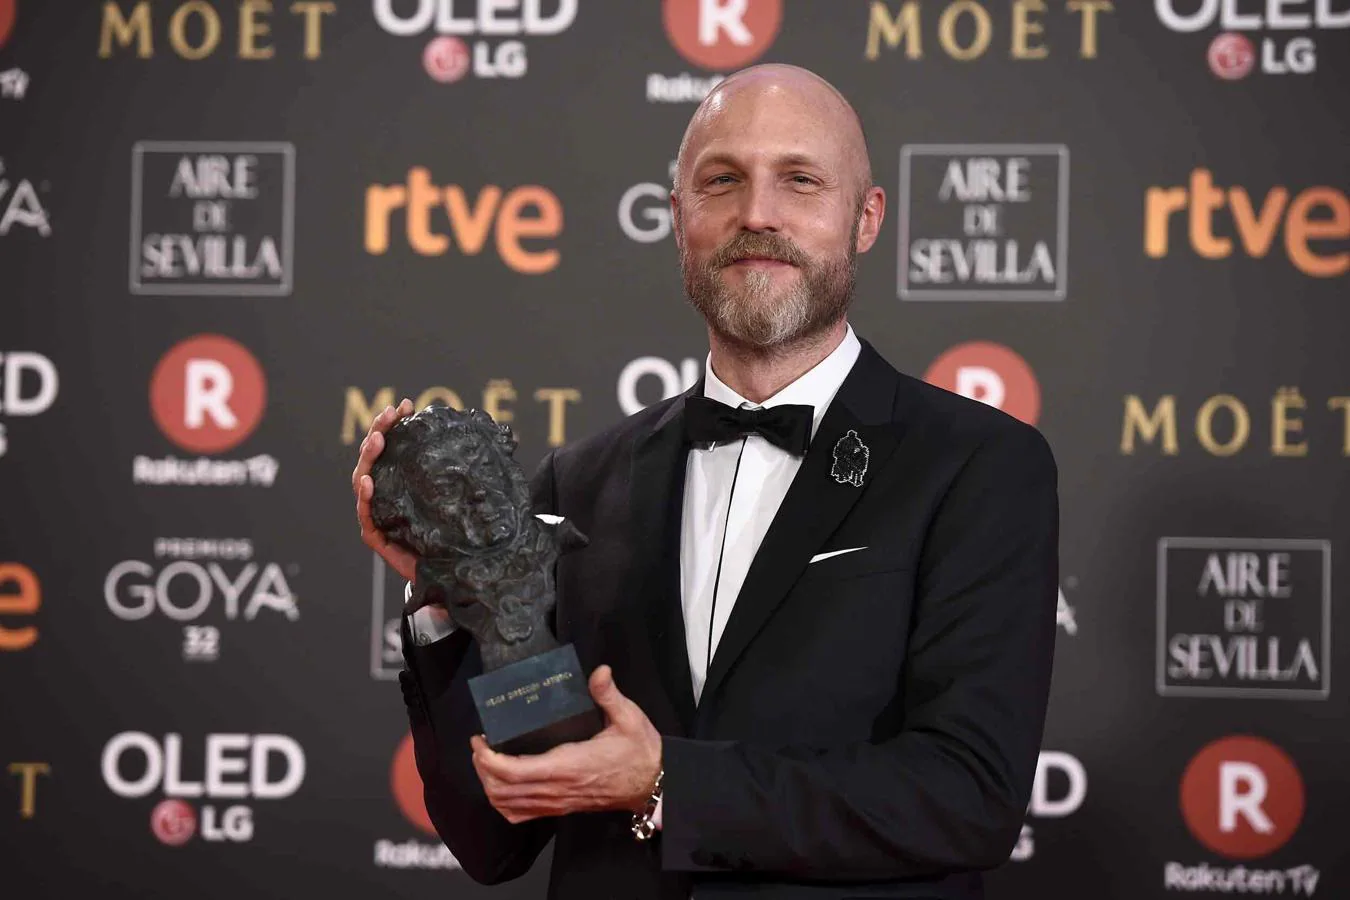 Ganadores Premios Goya 2018: Mikel Serrano